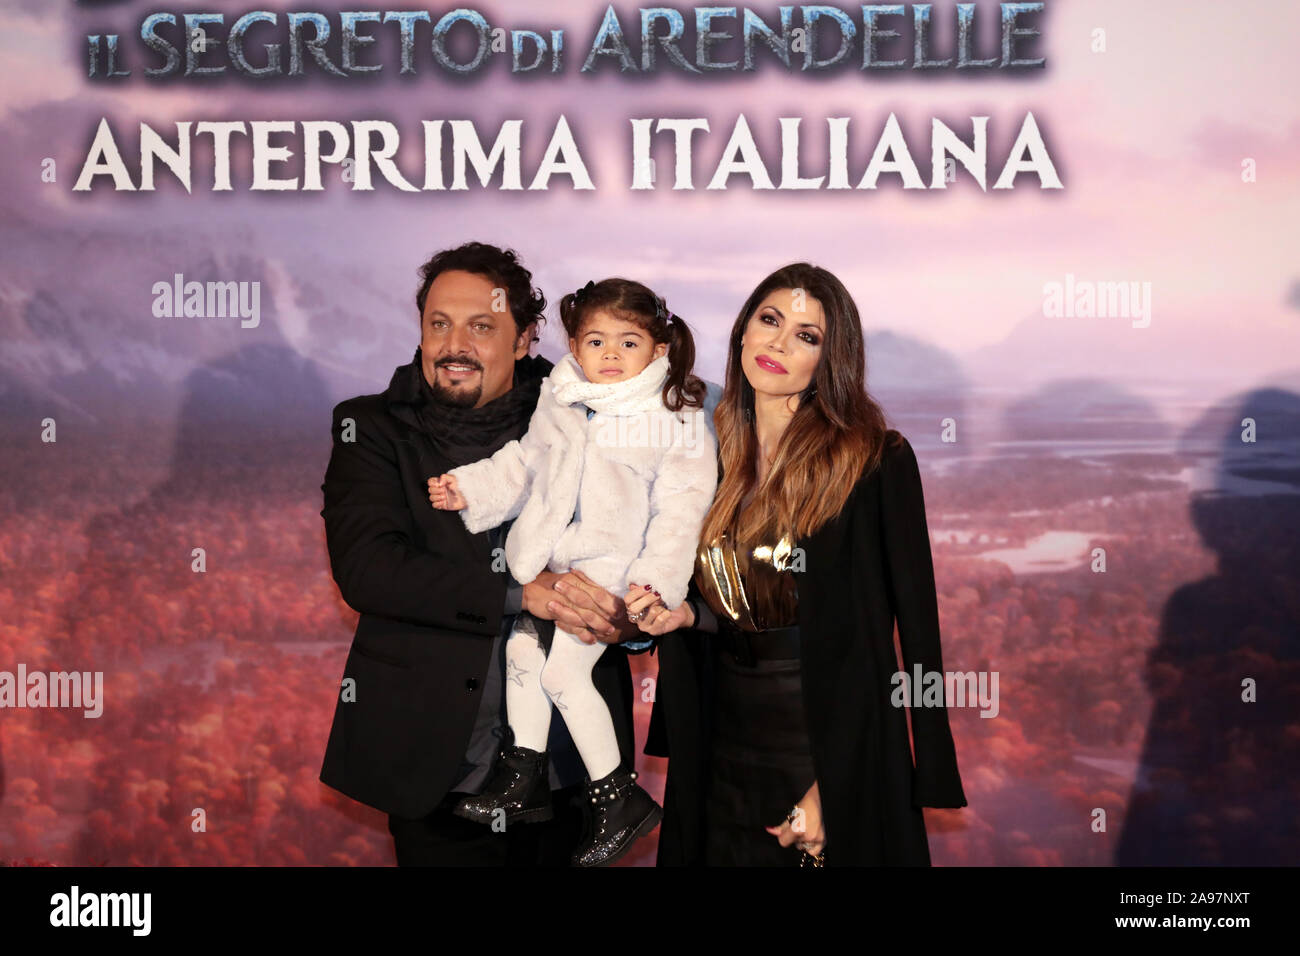 Roma, Italia - 12 Novembre 2019: Enrico Brignano (Olaf) con Flora Canto e sua figlia di partecipare al red carpet presso l'anteprima del film "congelate 2 - Il segreto di Arendelle', presso lo Spazio Cinema Moderno. Foto Stock